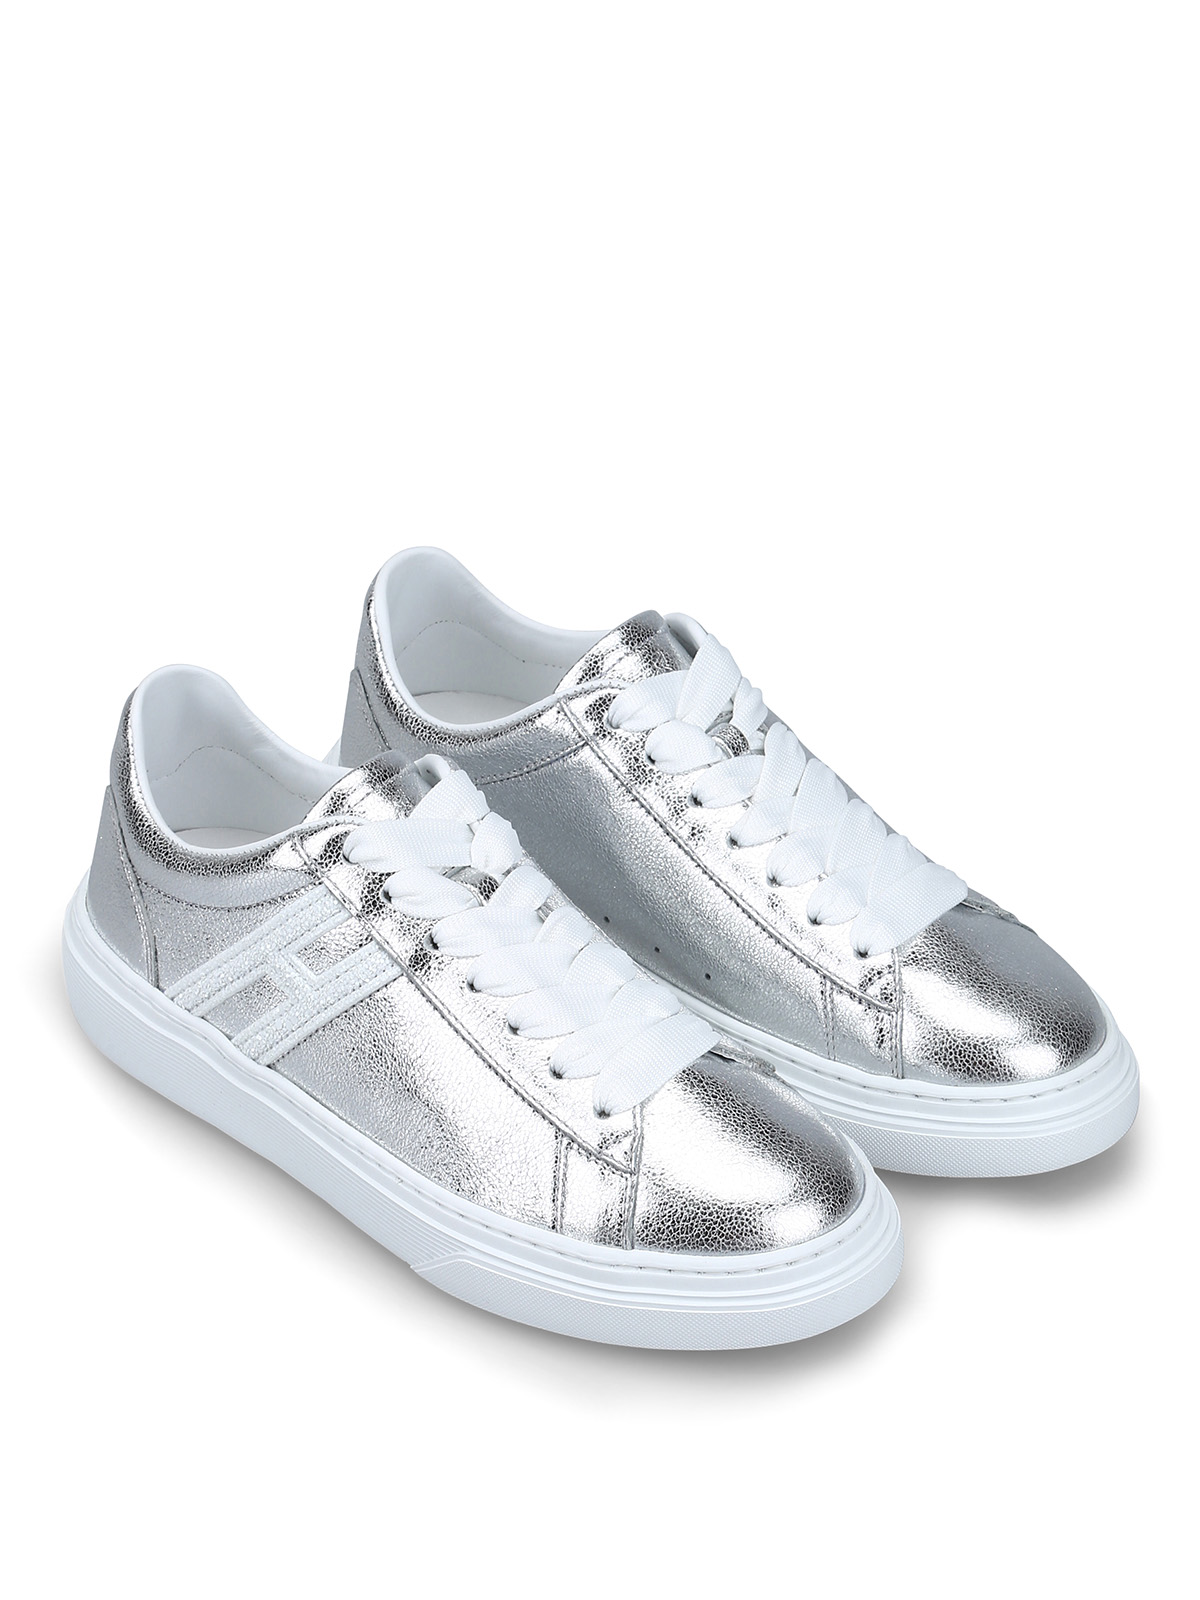 Hogan - Sneaker H365 in pelle laminata argento - sneakers -  HXW3650J970JHD0906